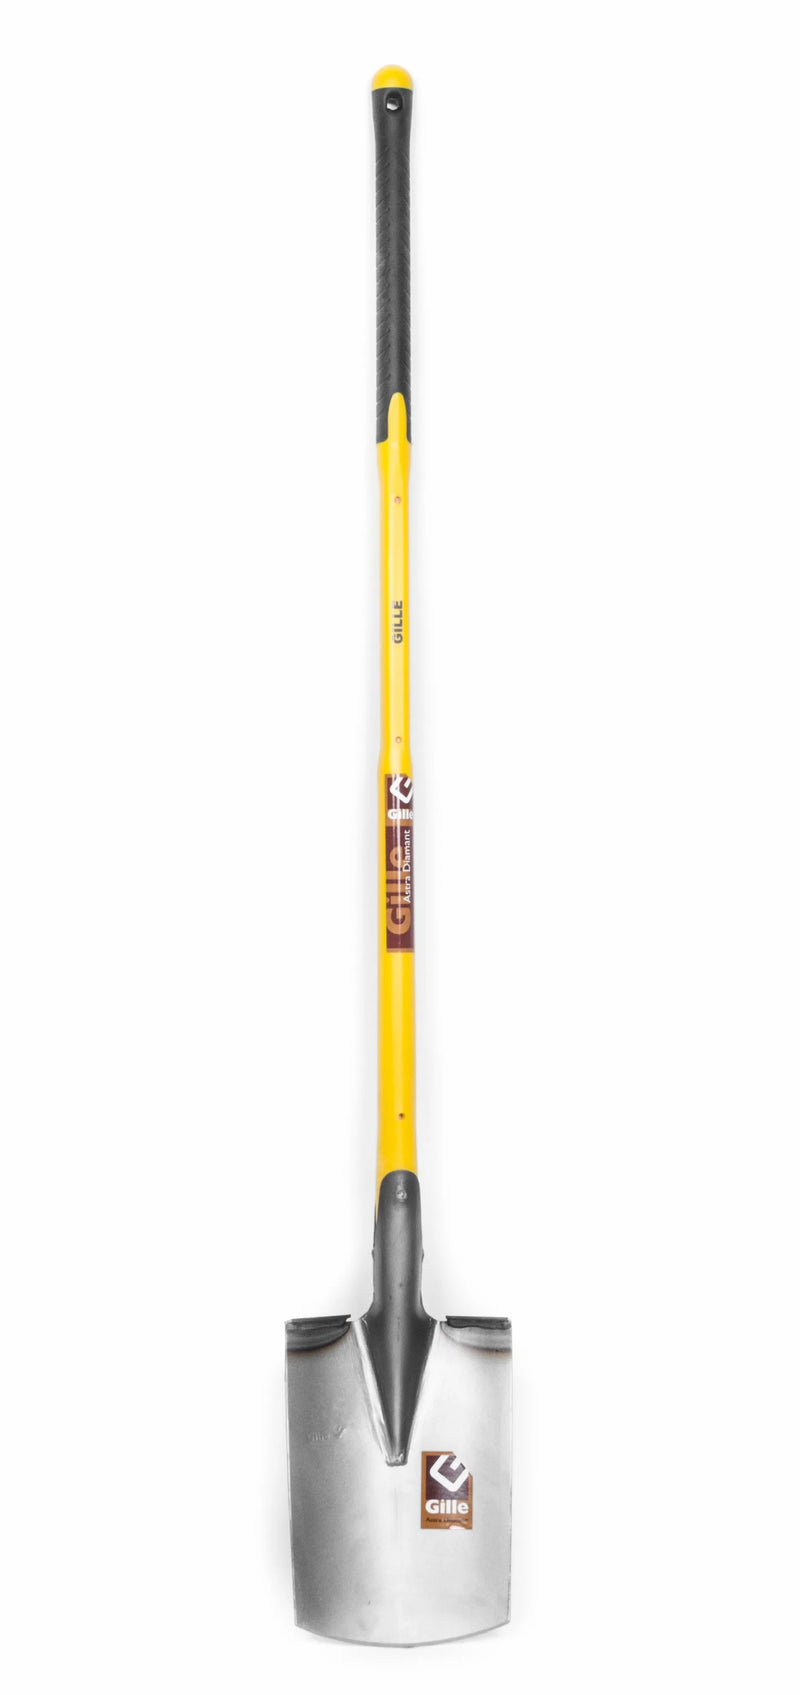 Gille Ferma Boomkwekersspade met rechte bolsteel in glasvezel-kunststof 110 cm - 209F